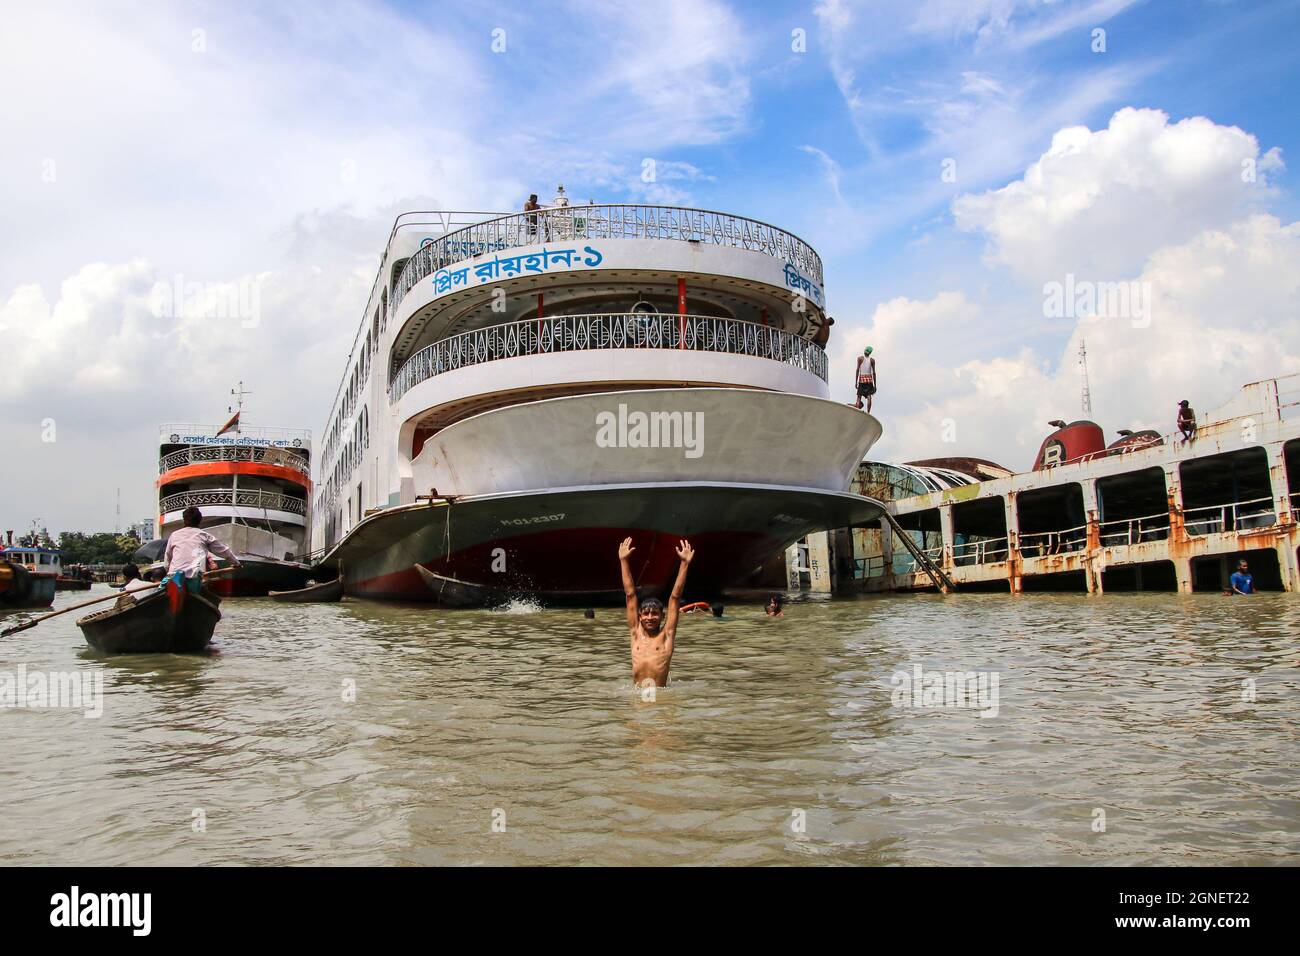 Buriganga river, Dhaka, Bangladesh : Lifestyle around the dockyard situated on the banks of Buriganga river Stock Photo